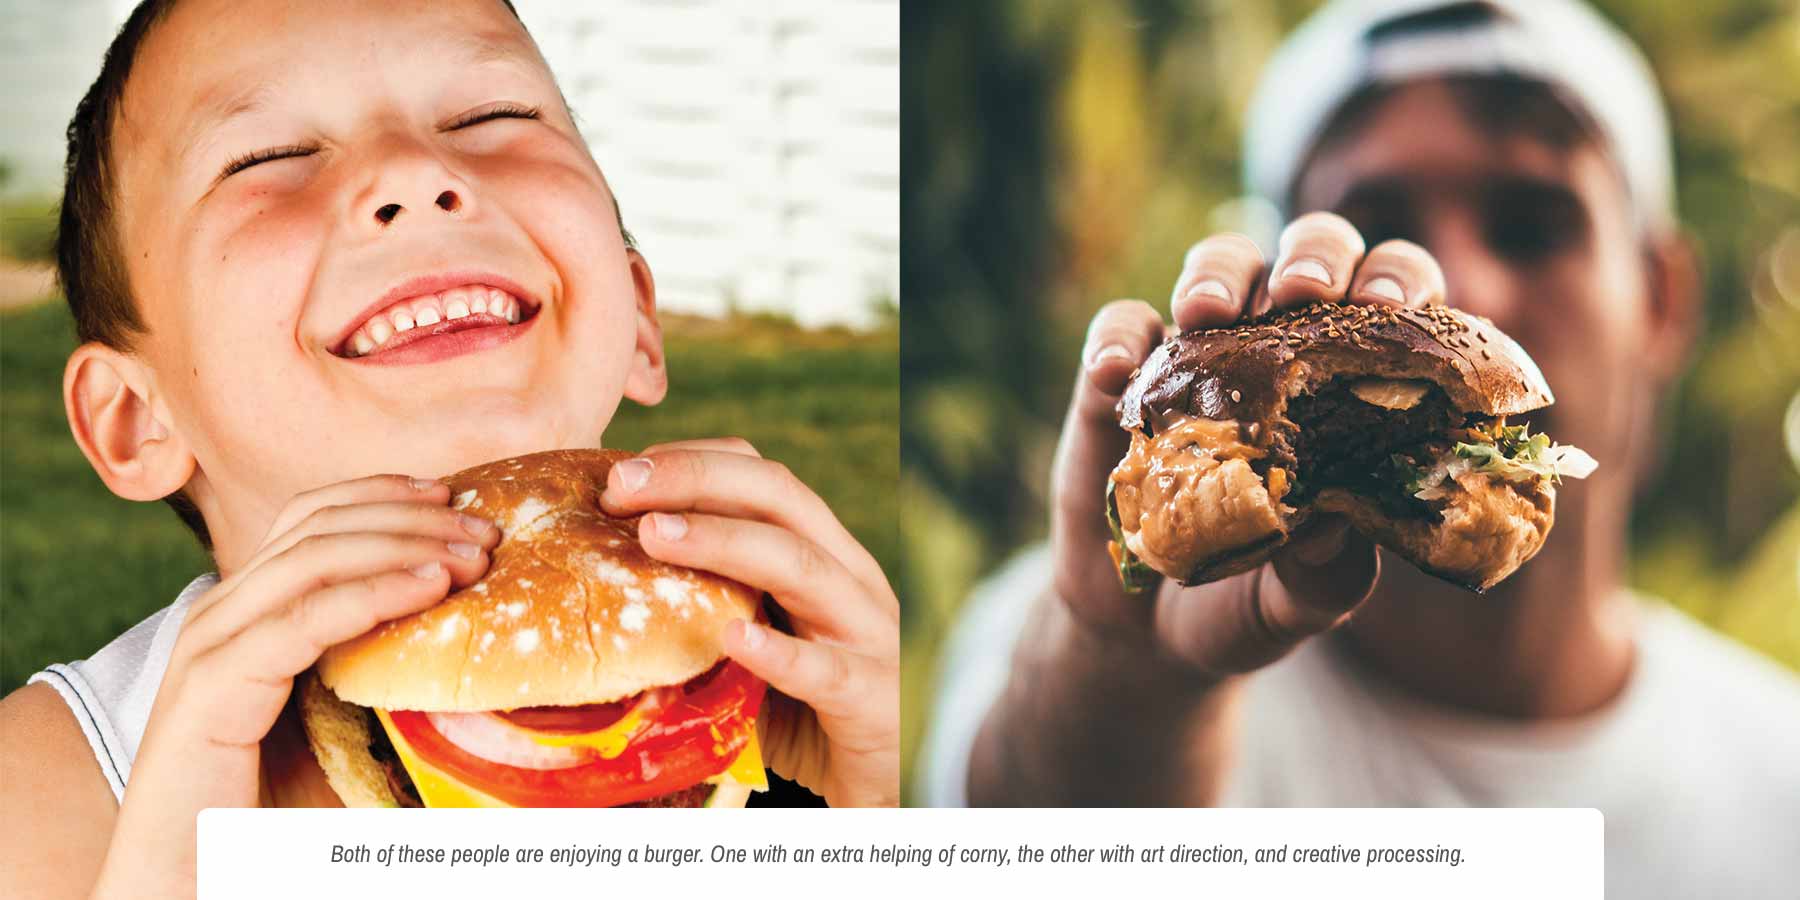 Cheeseburger stock photo comparison